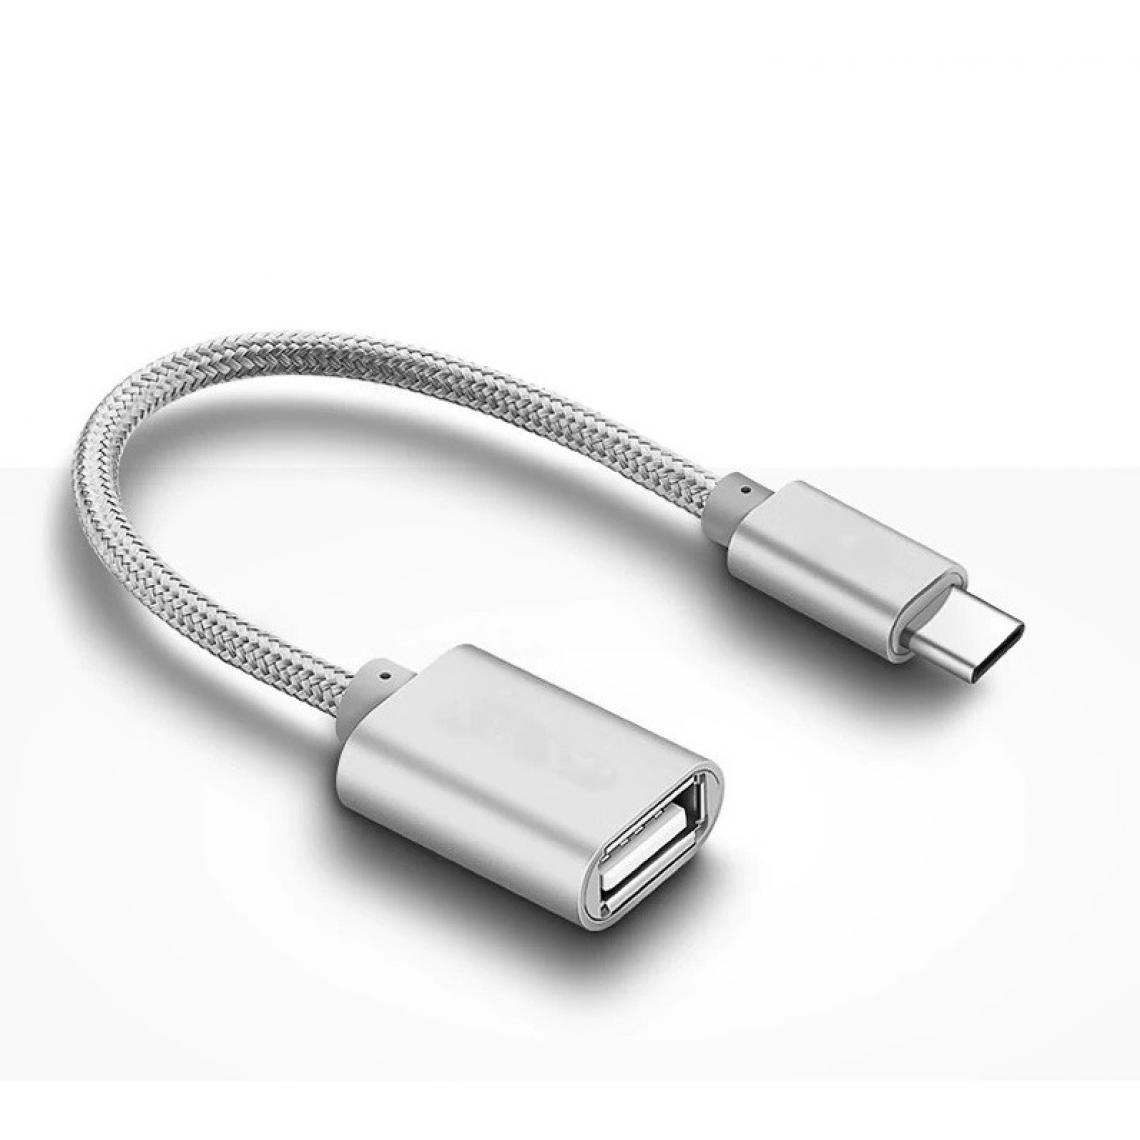 Shot - Adaptateur Type C/USB pour HUAWEI P40 lite 5G Smartphone & MAC USB-C Clef (ARGENT) - Autres accessoires smartphone